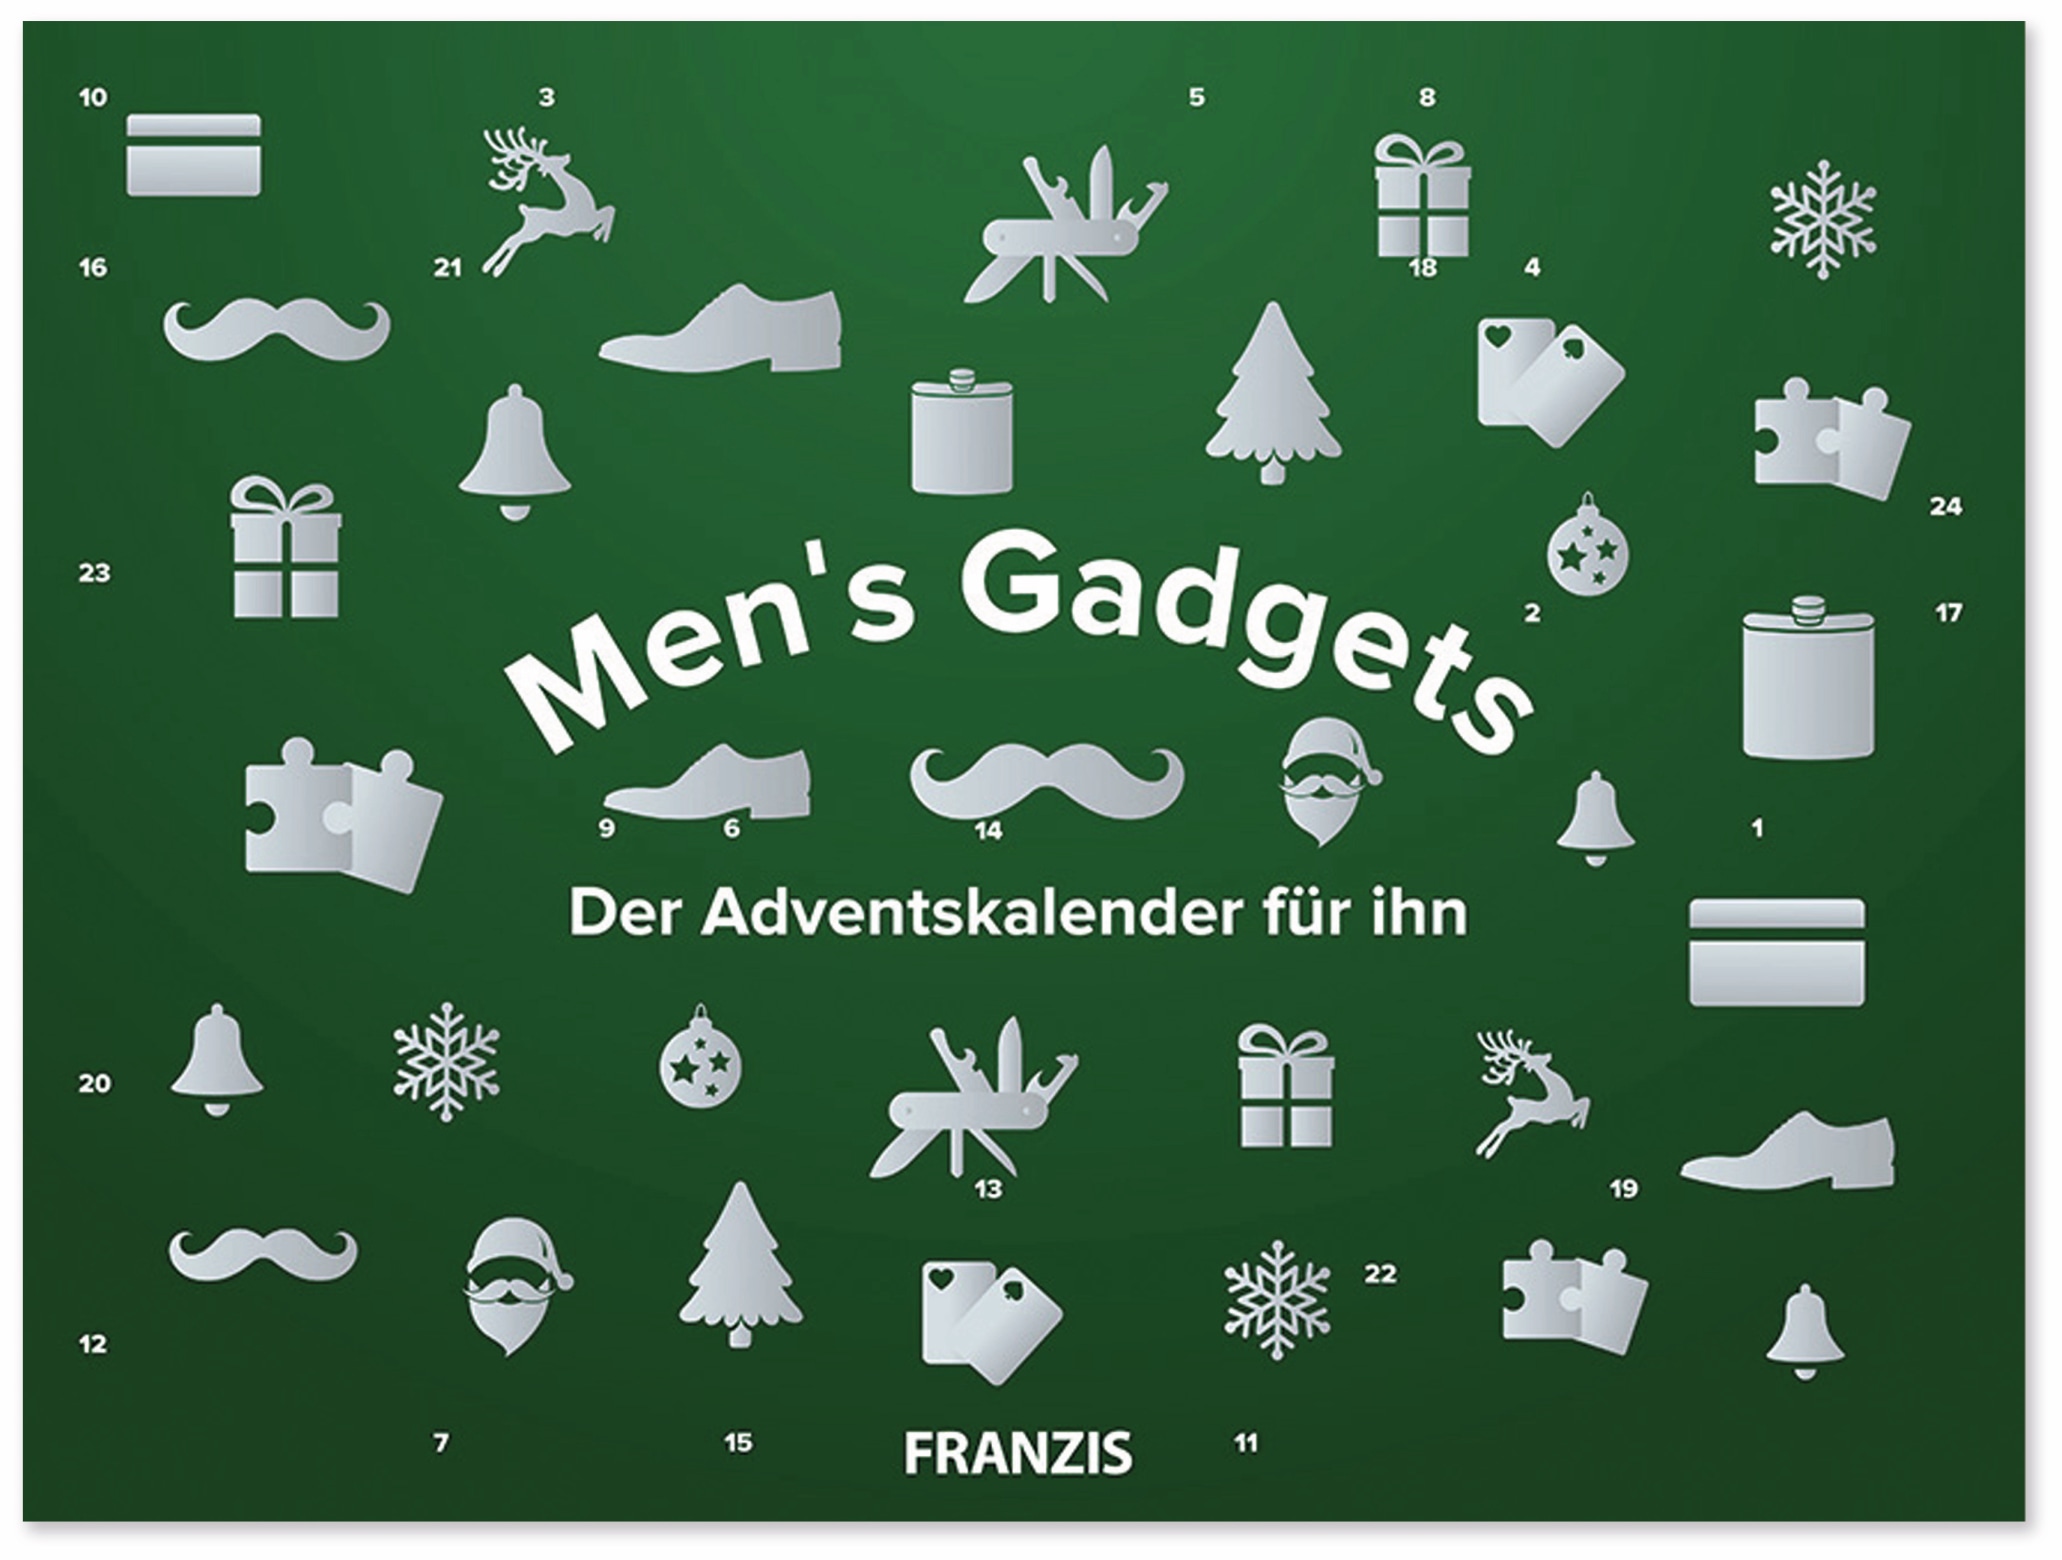 FRANZIS, Men's Gadgets - Der Adventskalender für ihn